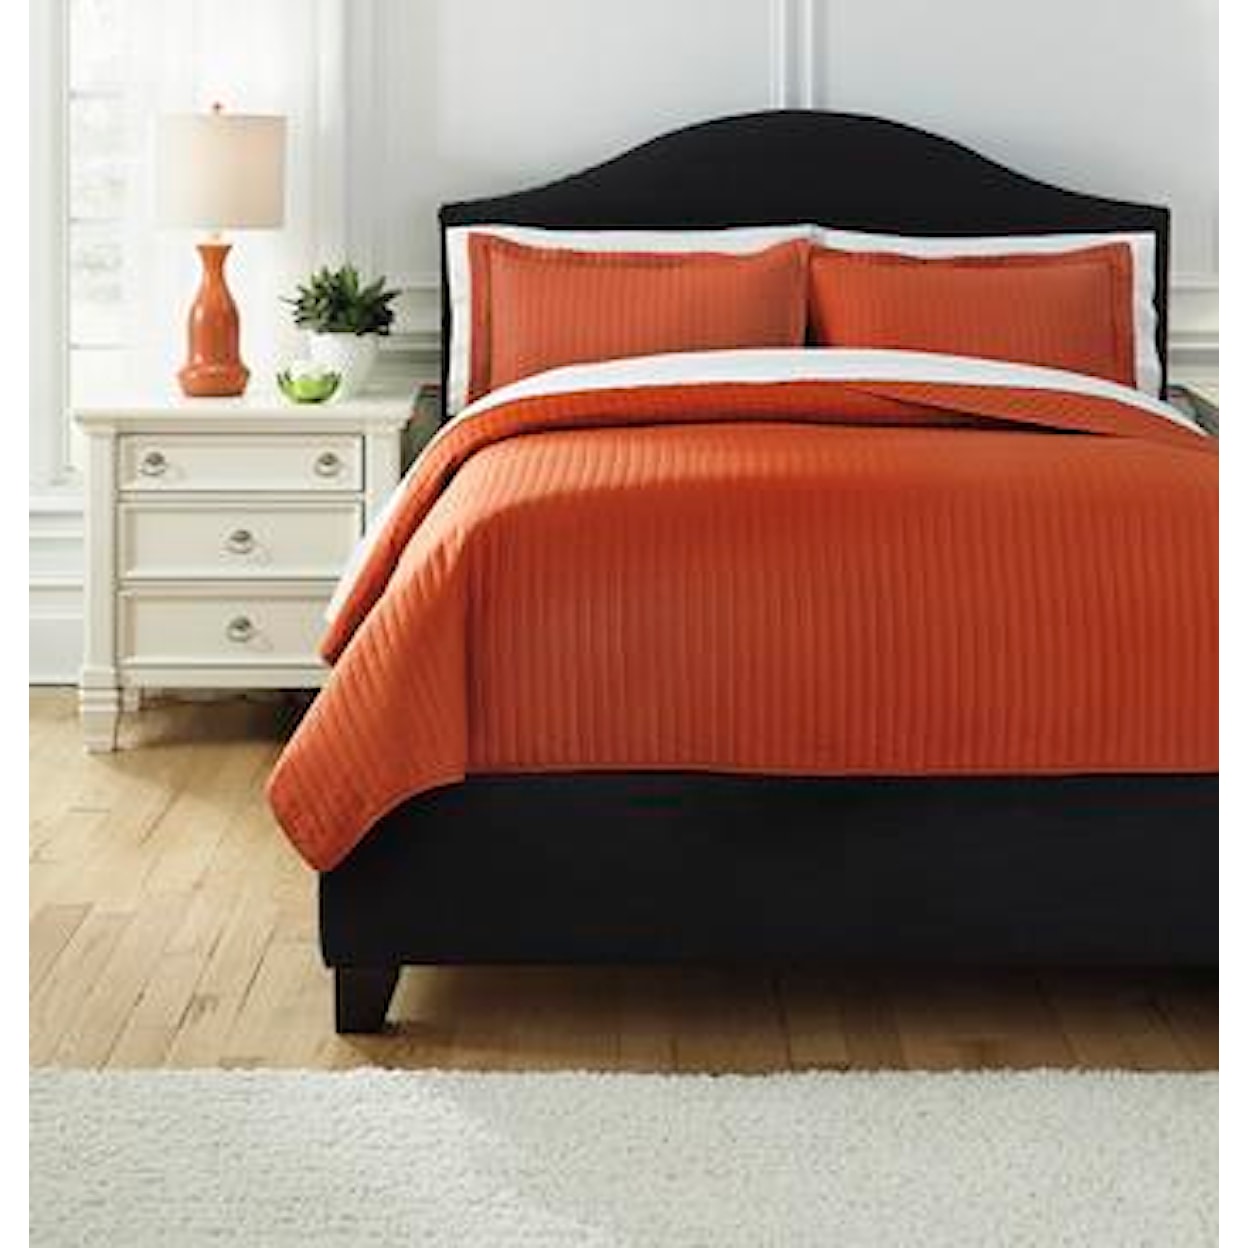 Ashley Furniture Signature Design Bedding Sets King Raleda Orange Coverlet Set